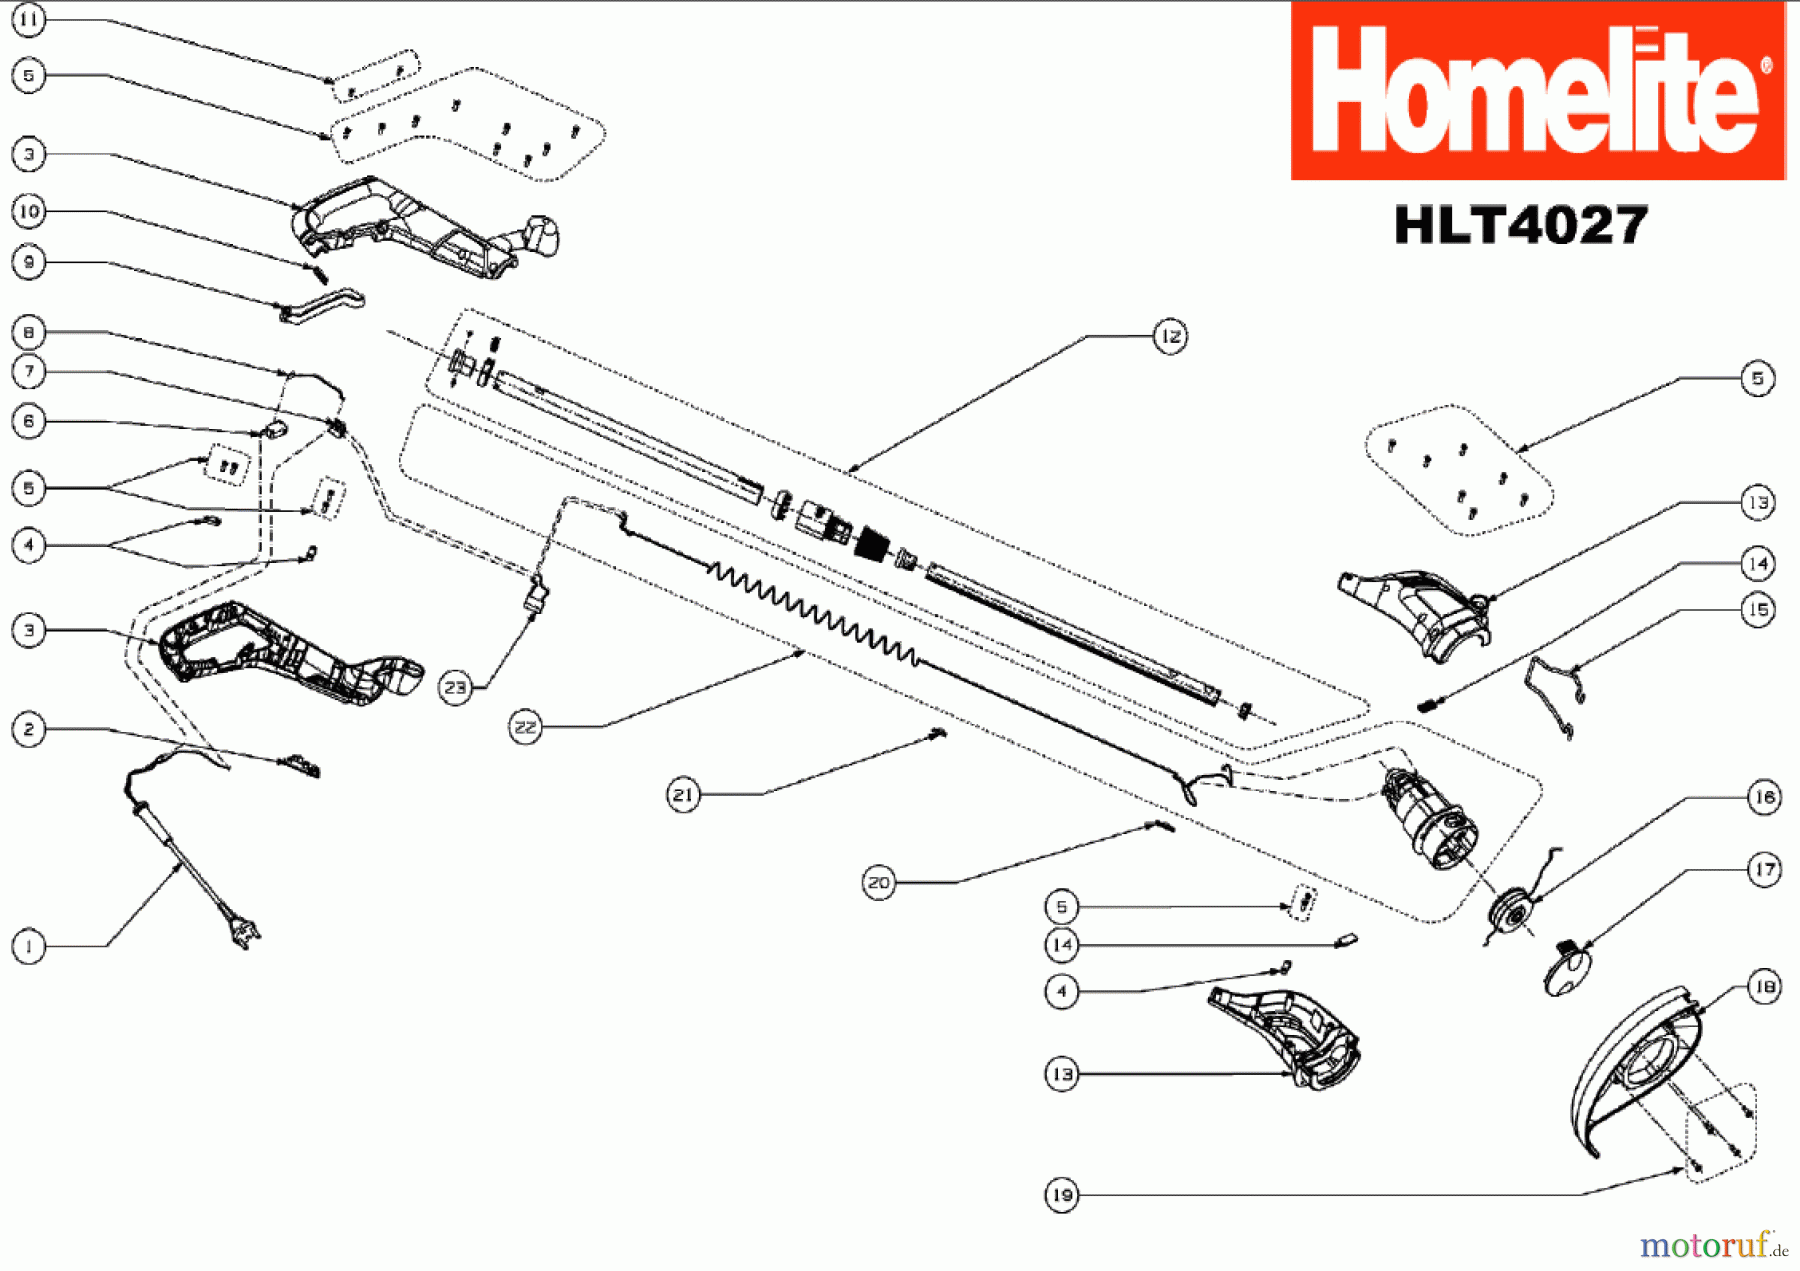  Homelite Trimmer Elektro HLT4027